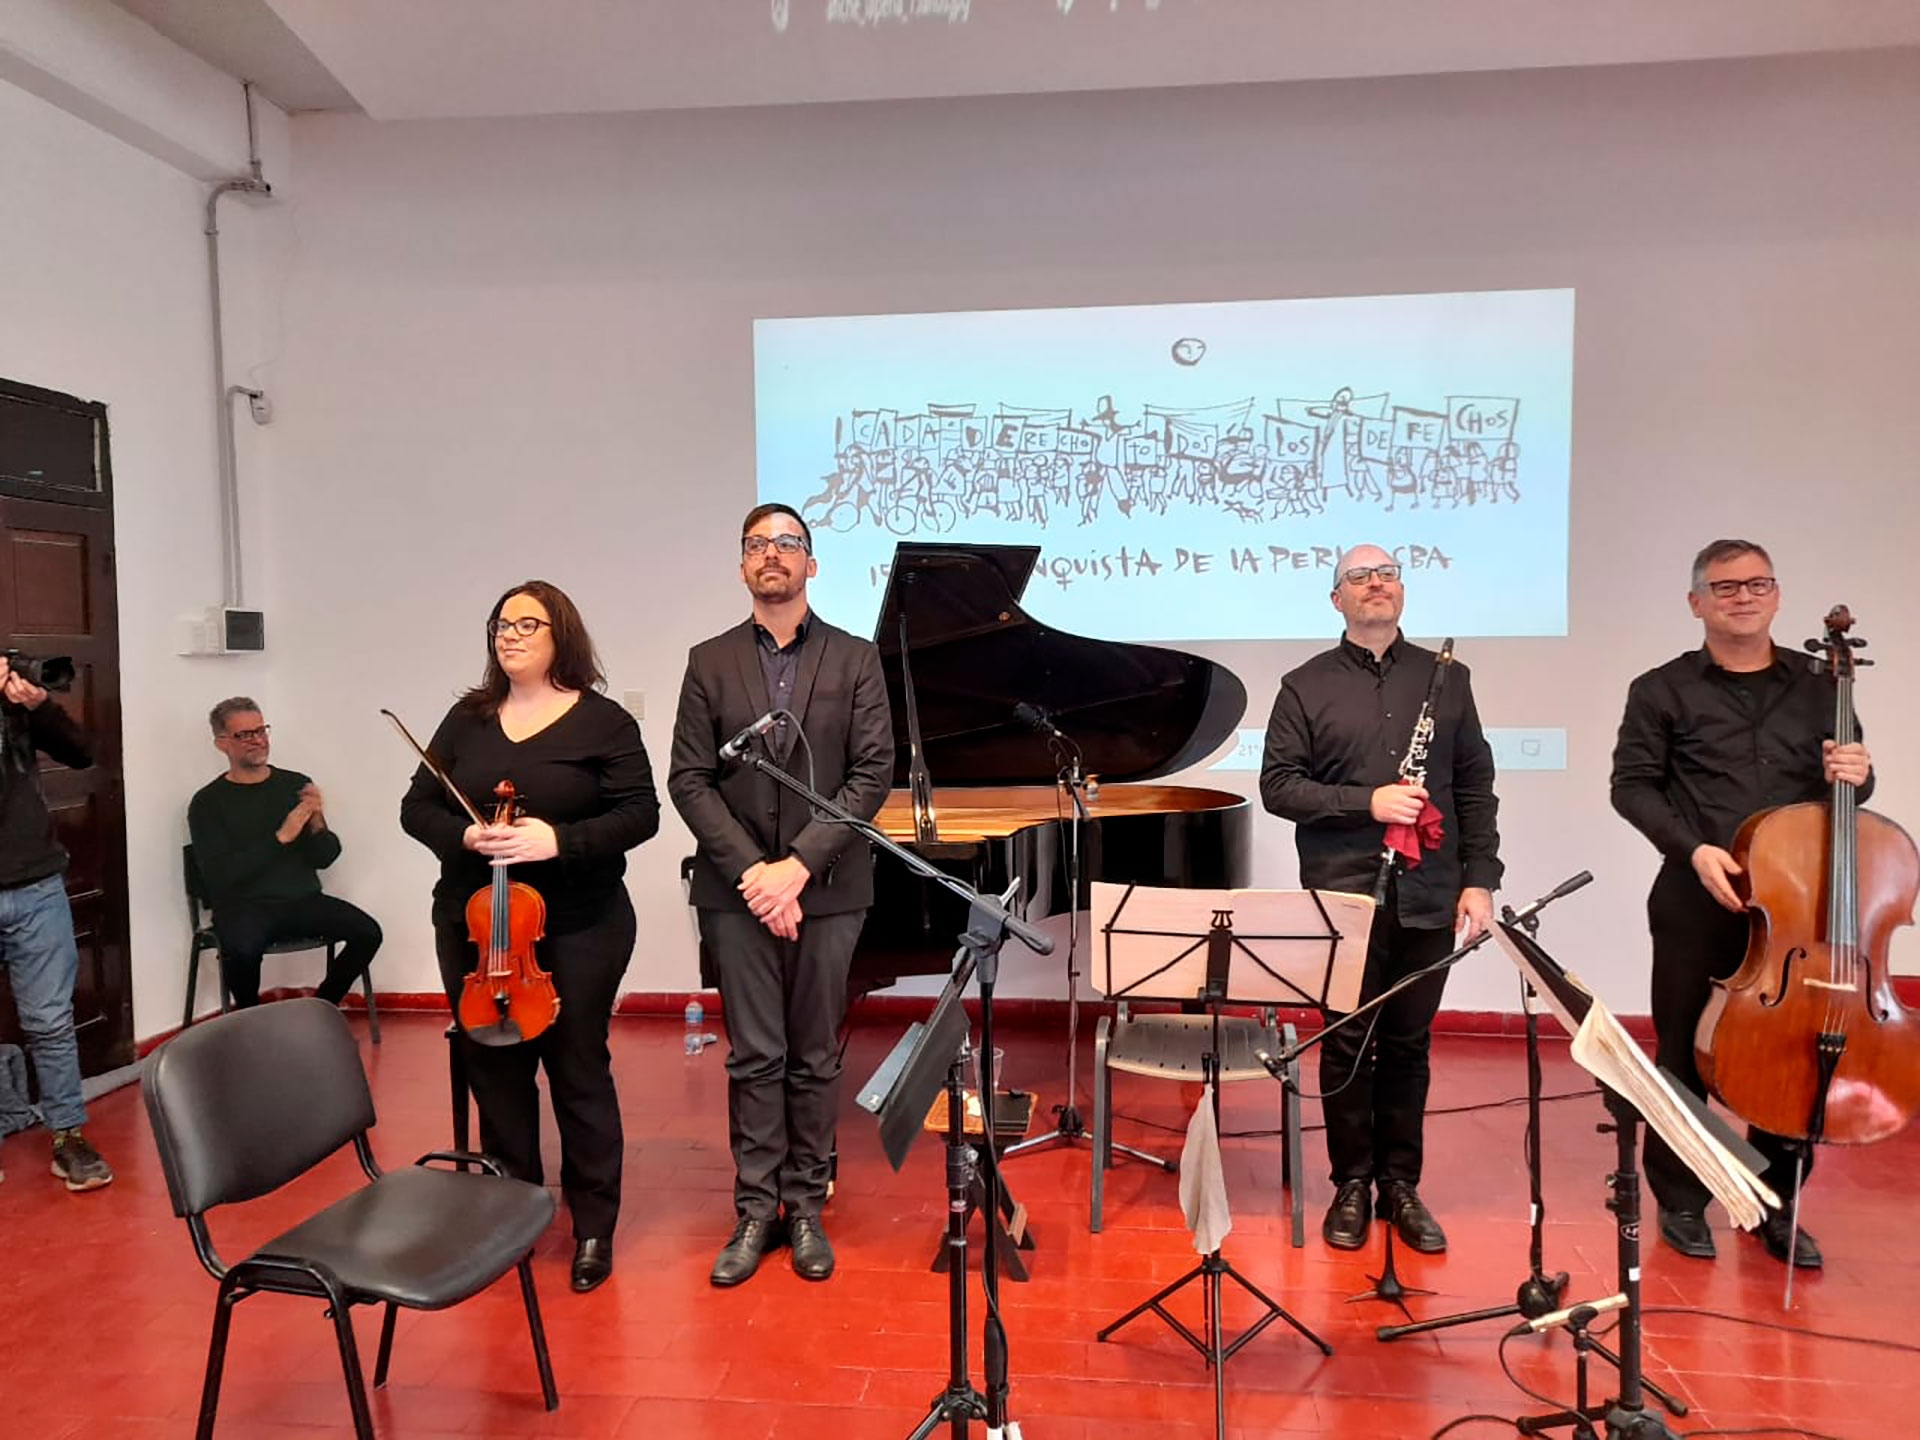 El pianista Maximiliano Bertea, acompañado por María Belén Almada en violín, Eduardo Spinelli en clarinete, Martín Devoto en Violoncello, interpretaron el "Cuarteto para el fin del Tiempo" en el Espacio para la Memoria La Perla, Córdoba, en agosto de 2022